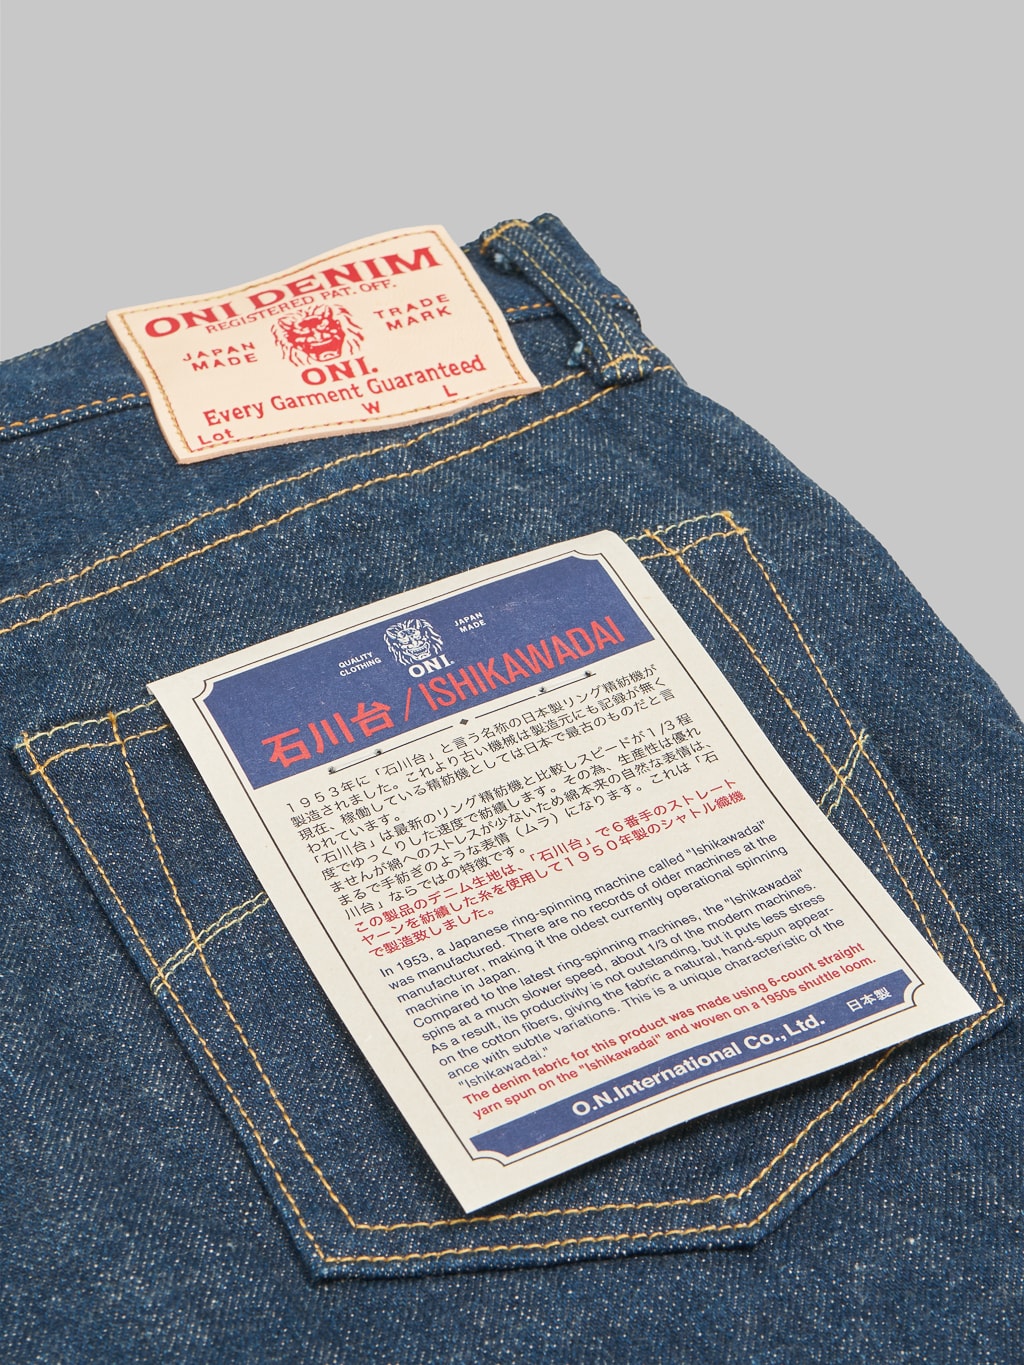 ONI Denim 902 Ishikawadai 15oz Jeans labels